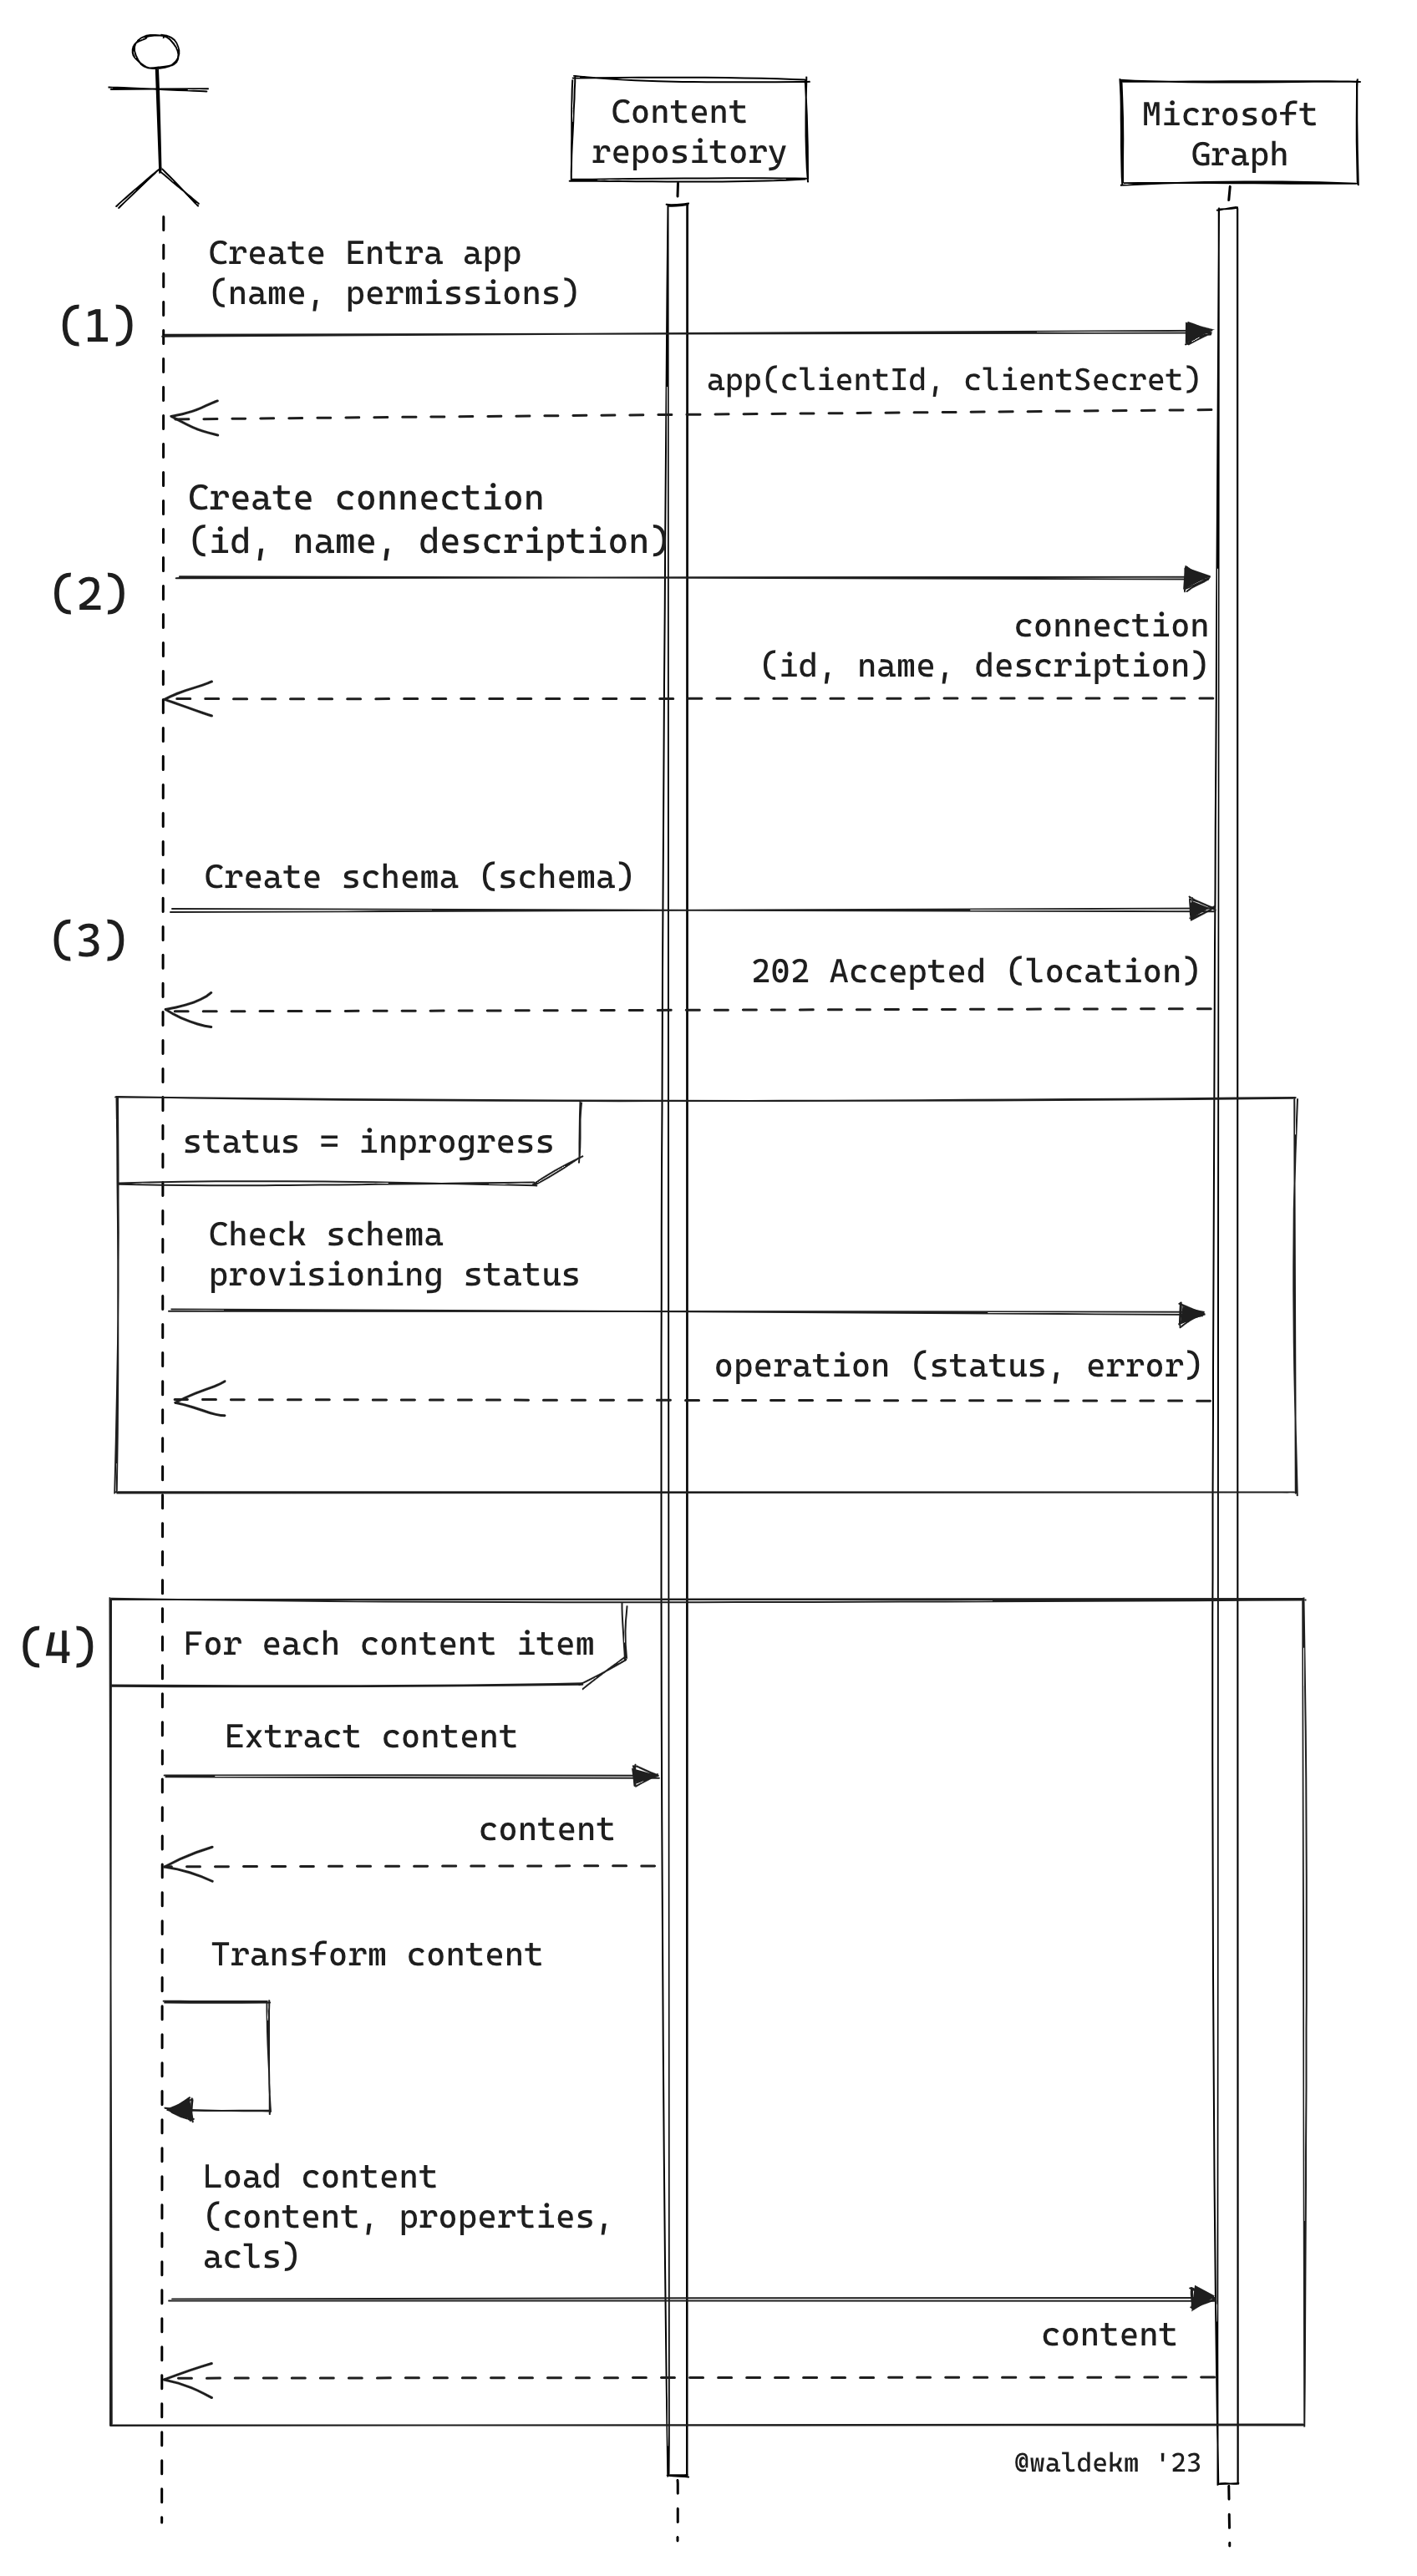 Microsoft Graph コネクタを構築する 4 つの手順を示す図